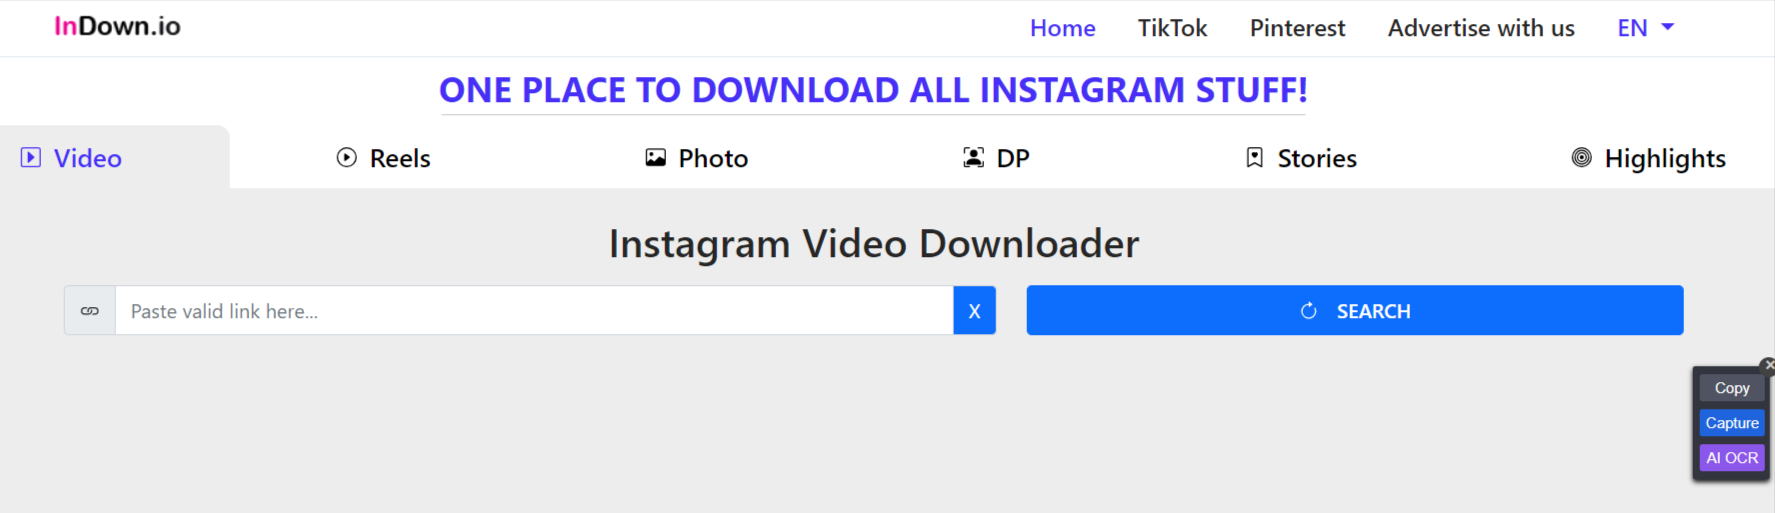 Instagram-Video-Downloader-Fast-Secure